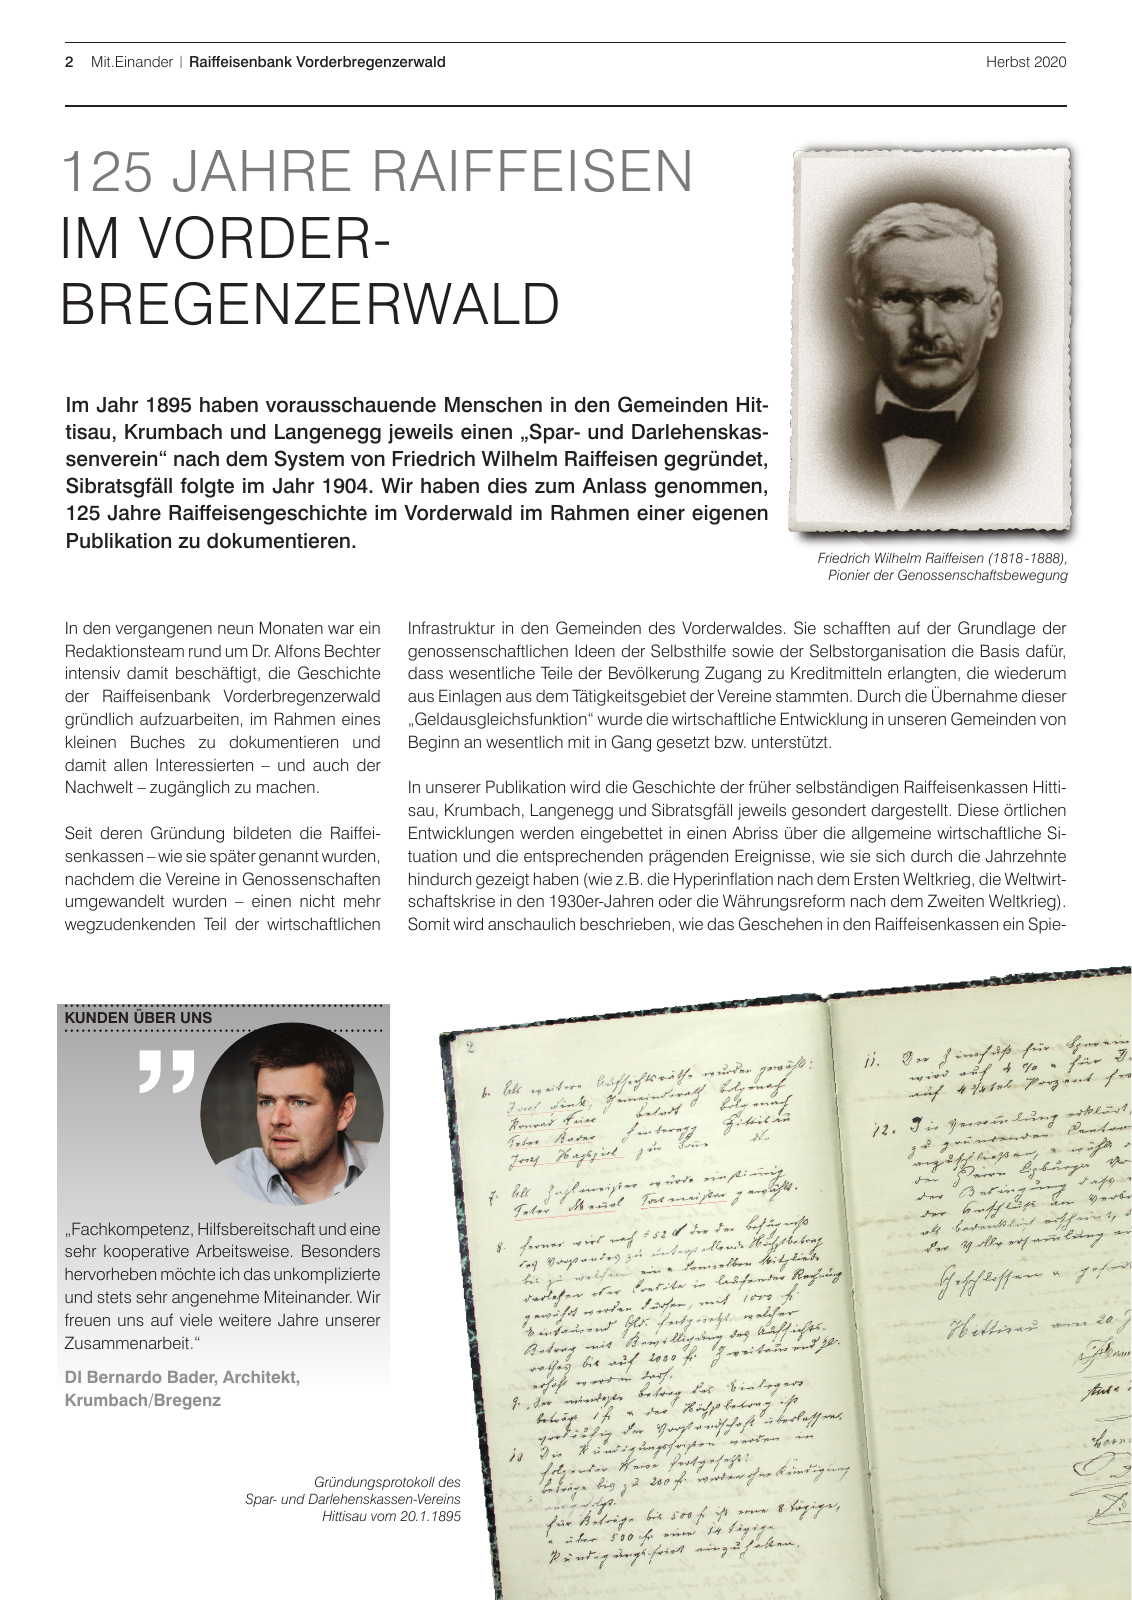 Vorschau RB Vorderbregenzerwald MiZ Herbst 2020 Seite 2